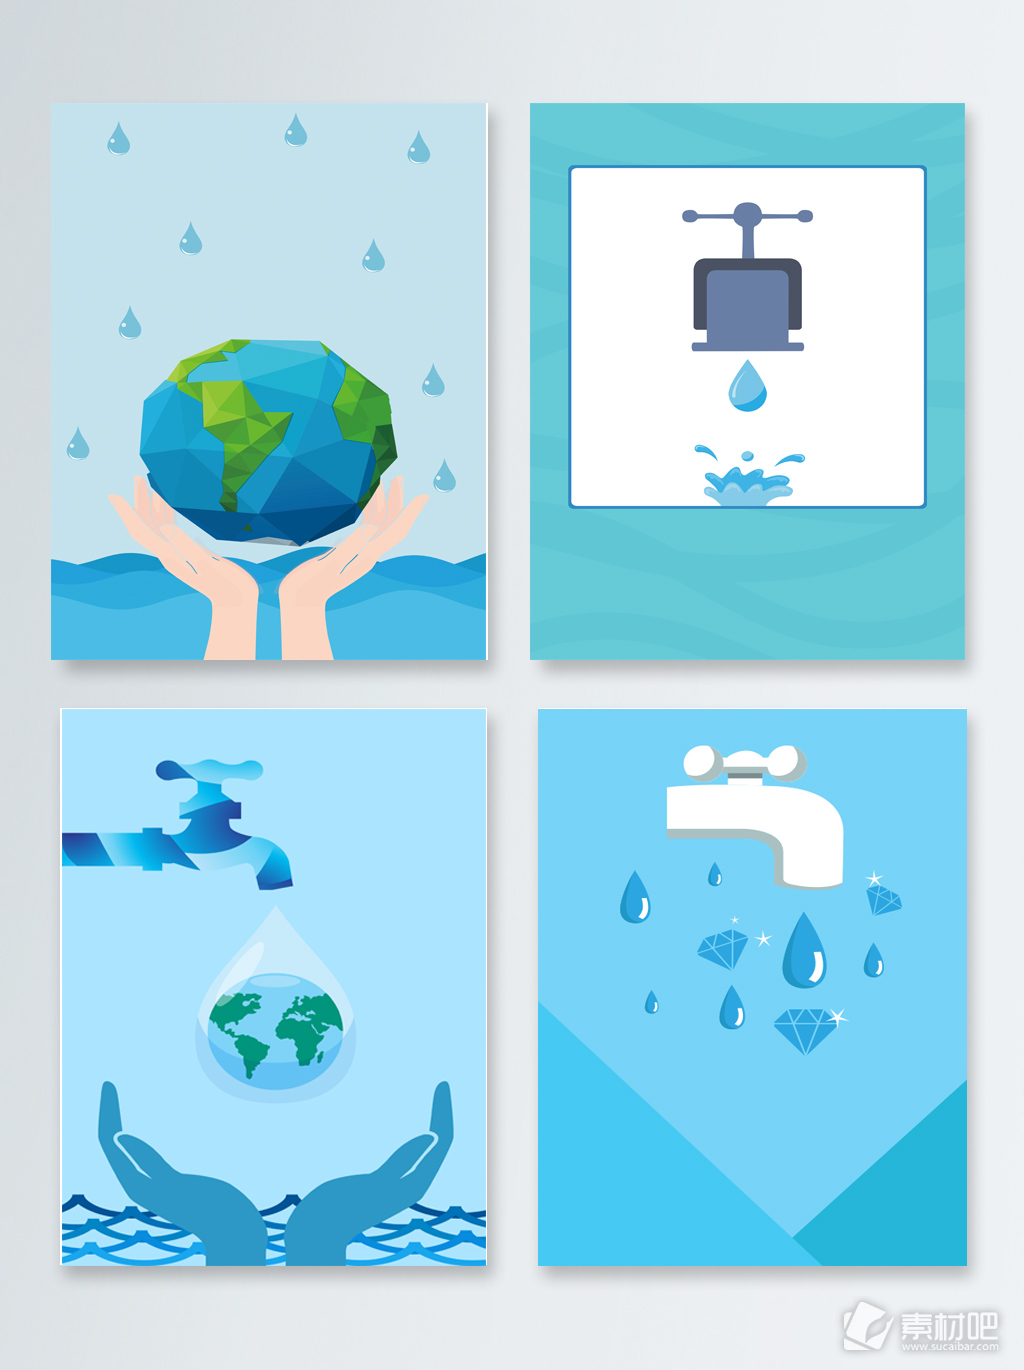 节约用水保护环境广告背景图